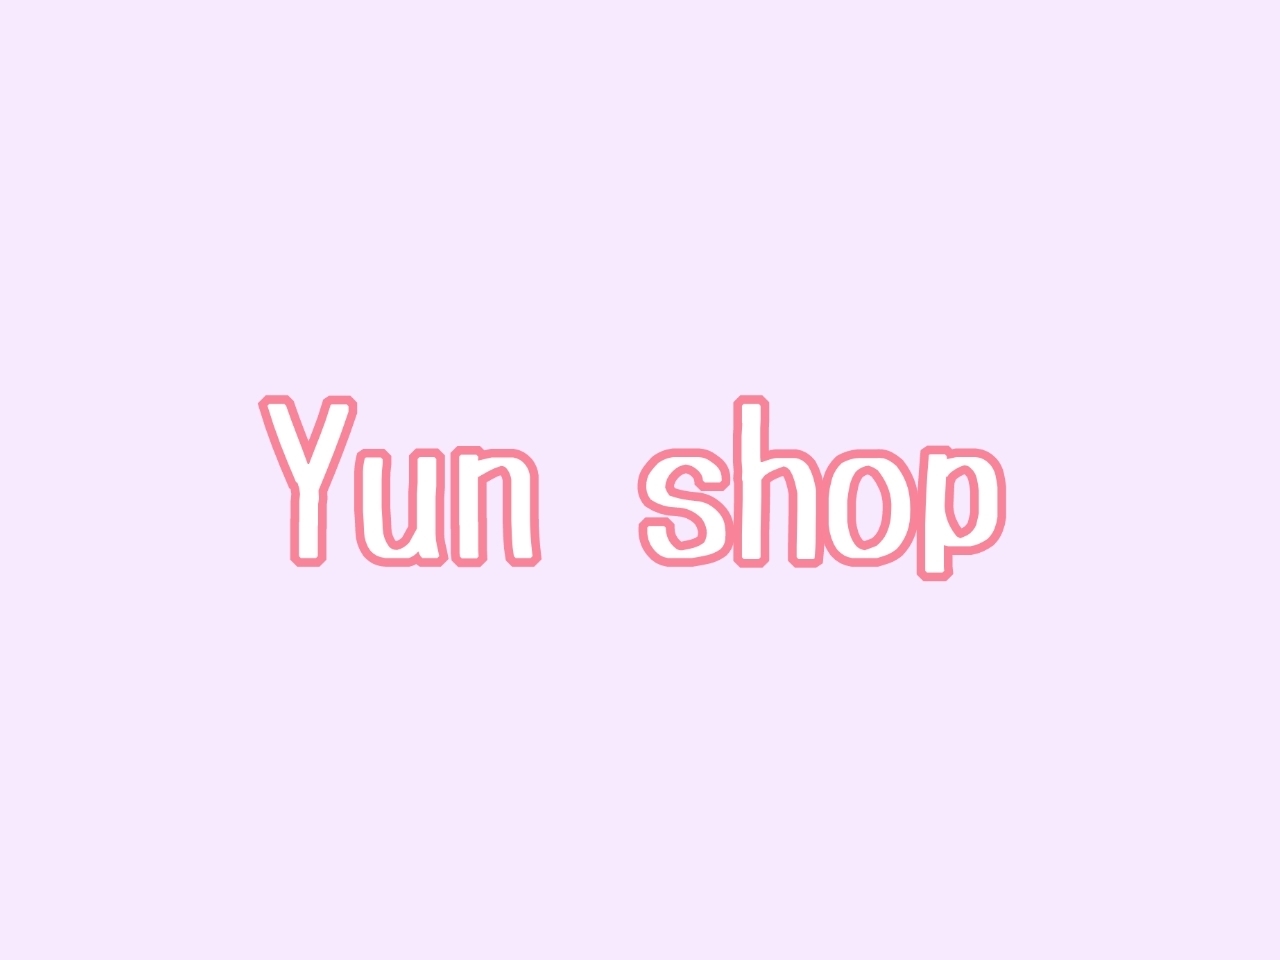 Yun shop